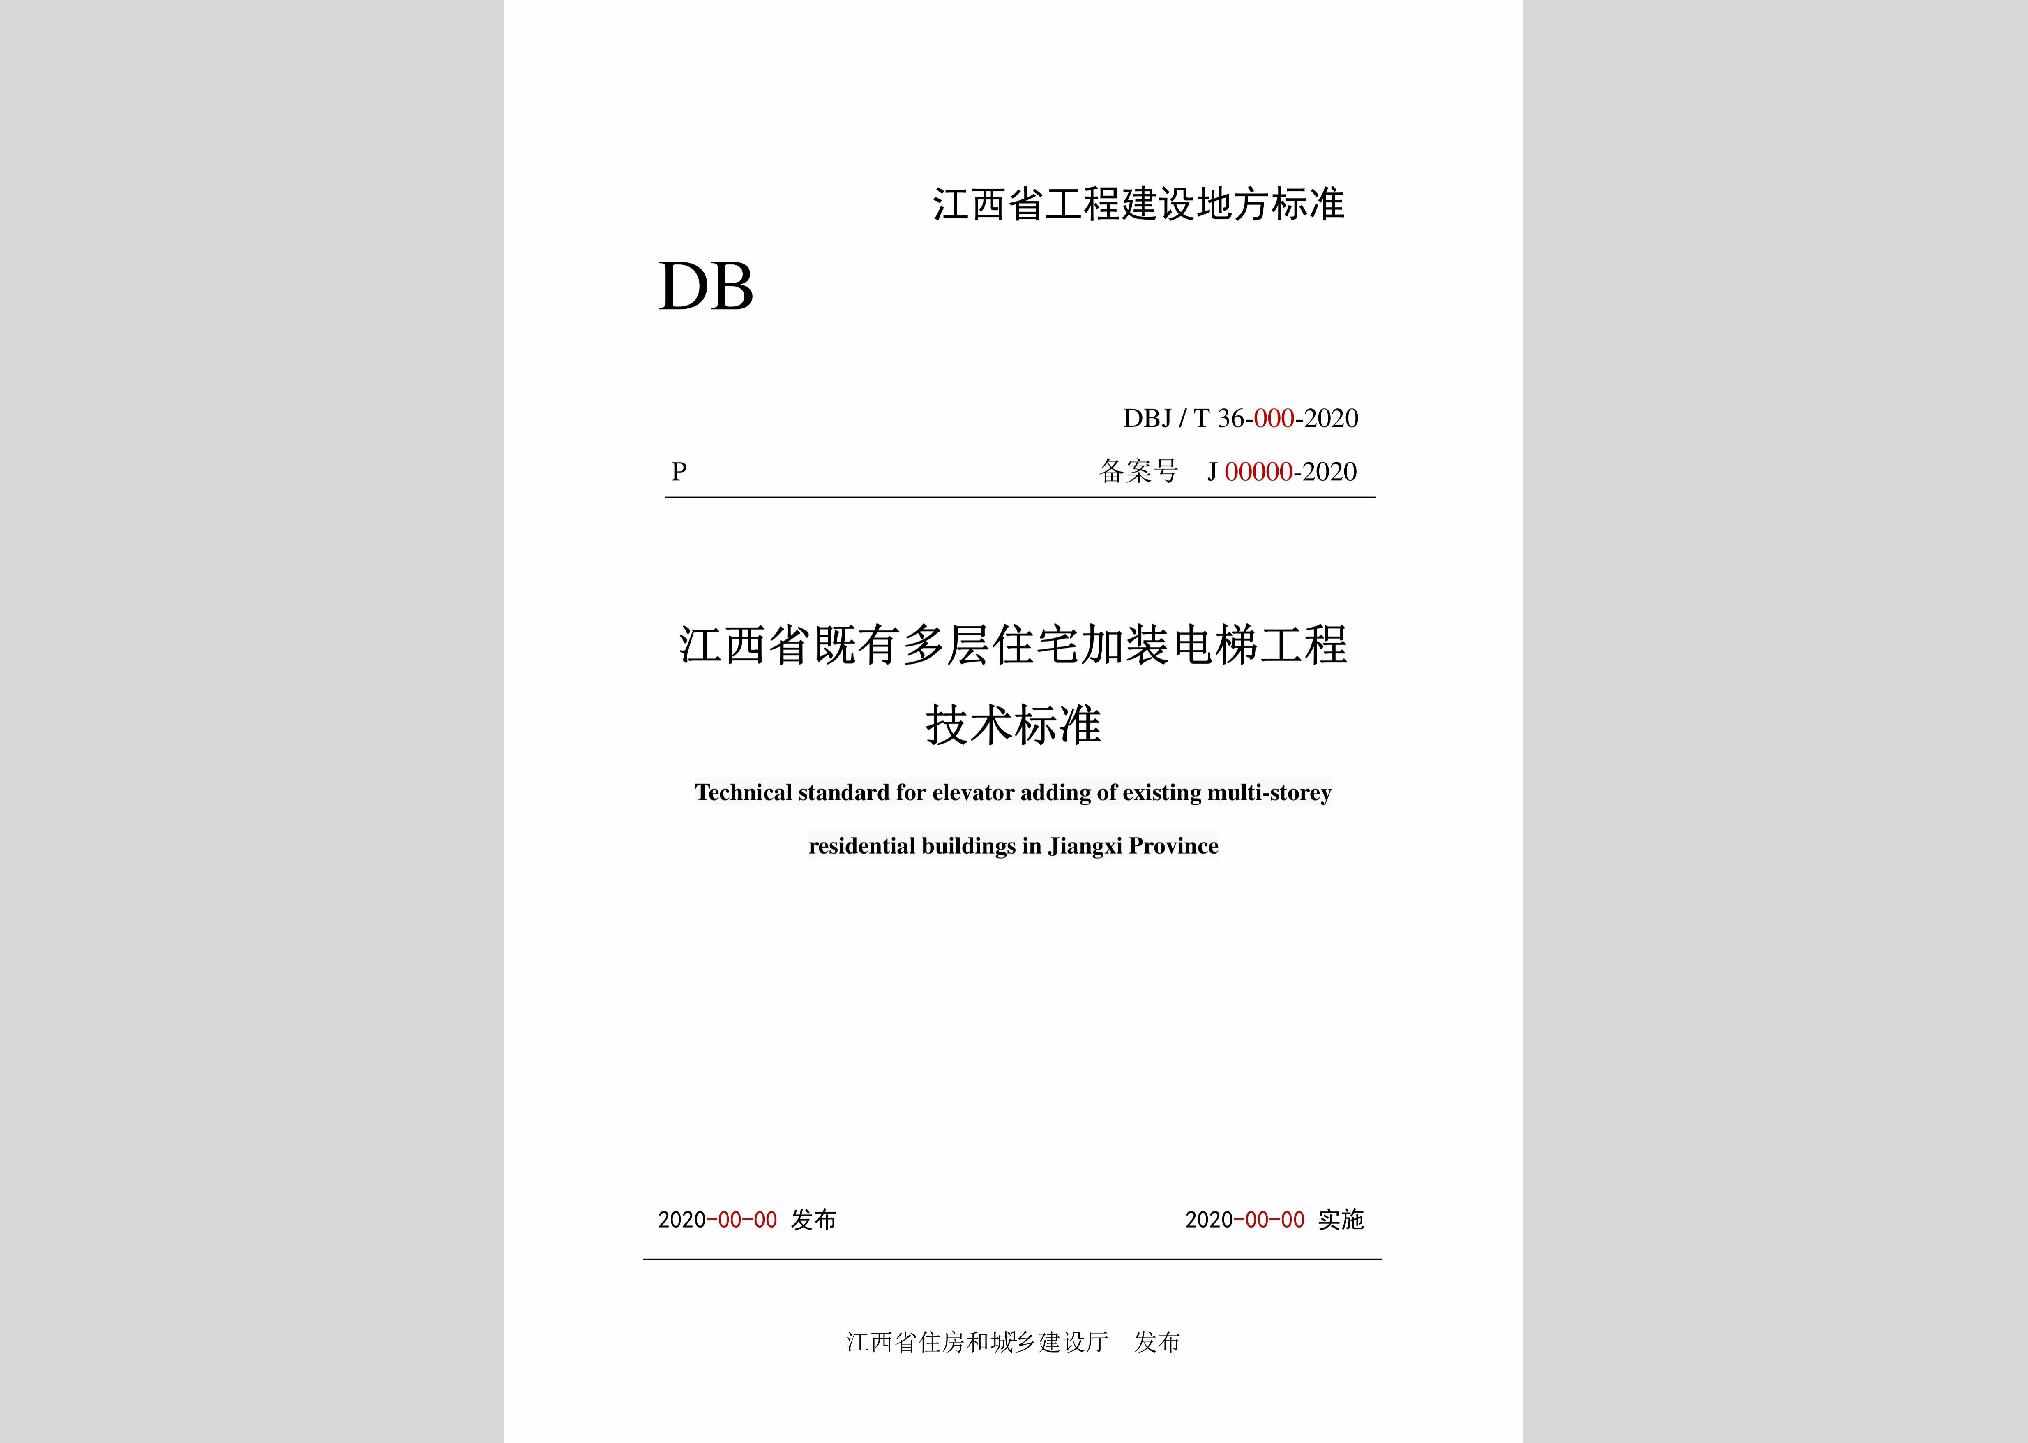 DBJ/T36-059-2020：江西省既有多层住宅加装电梯工程技术标准